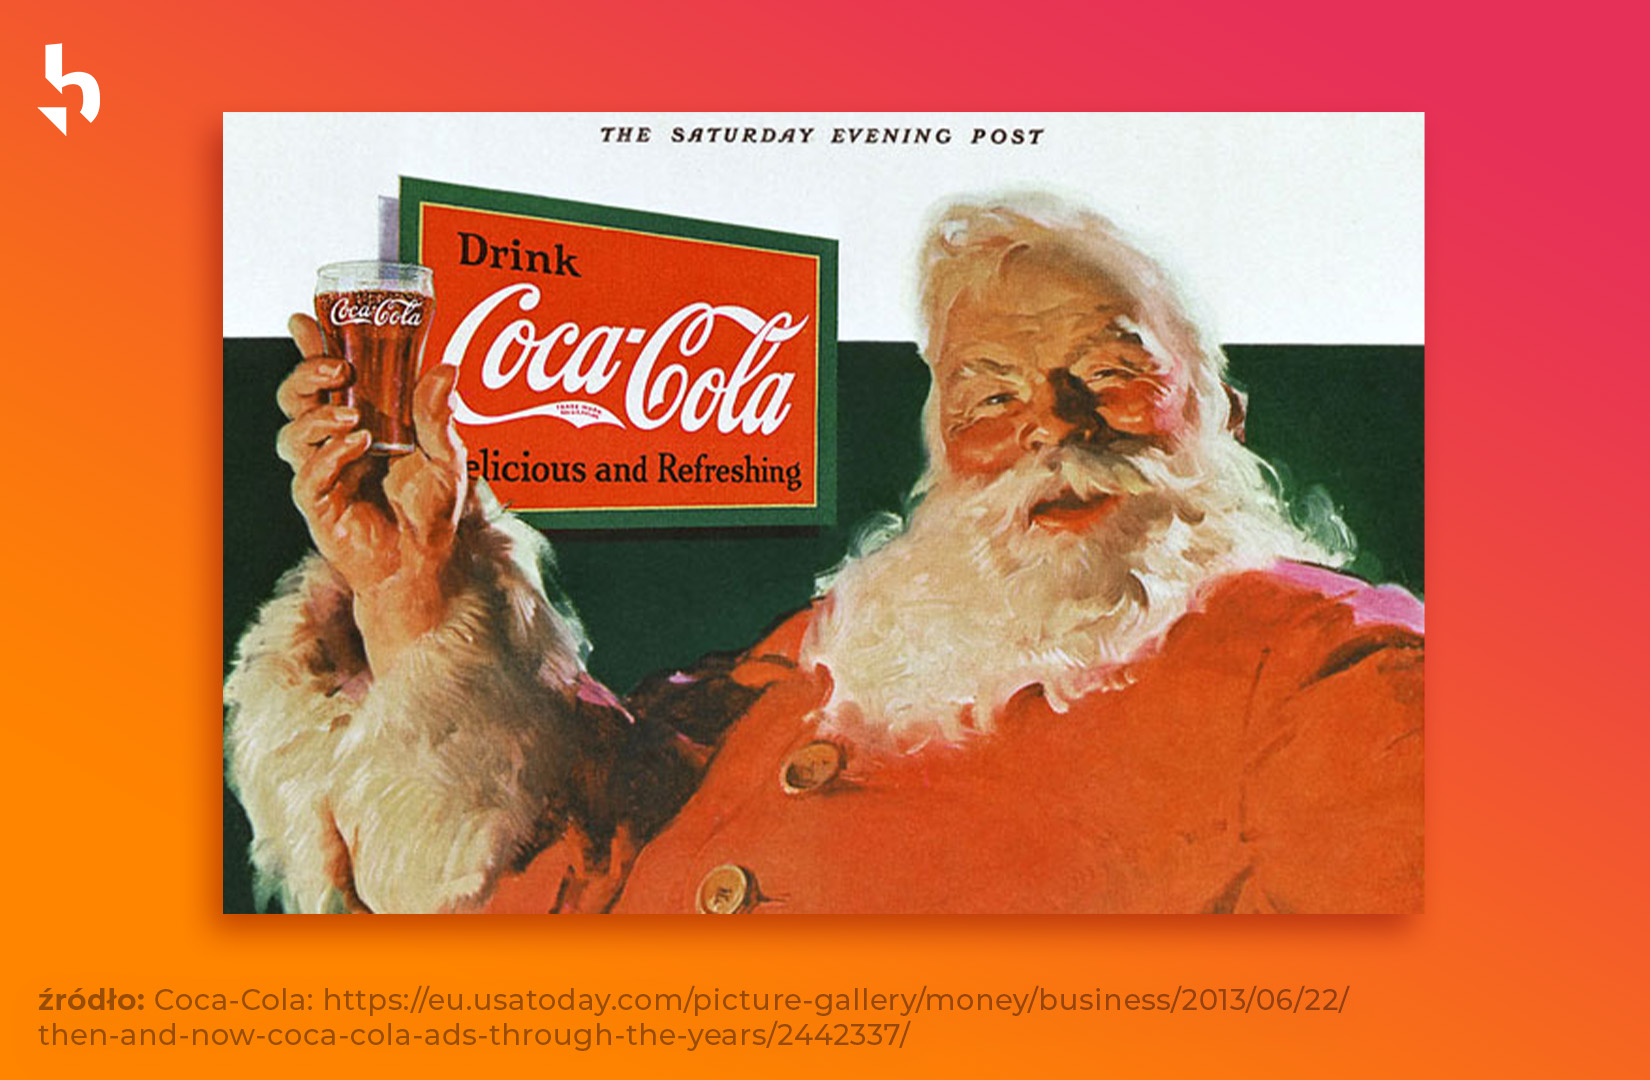 Coca cola dąży do zwiększenia świadomości marki wykorzystując brand hero - w postaci Św. Mikołaja